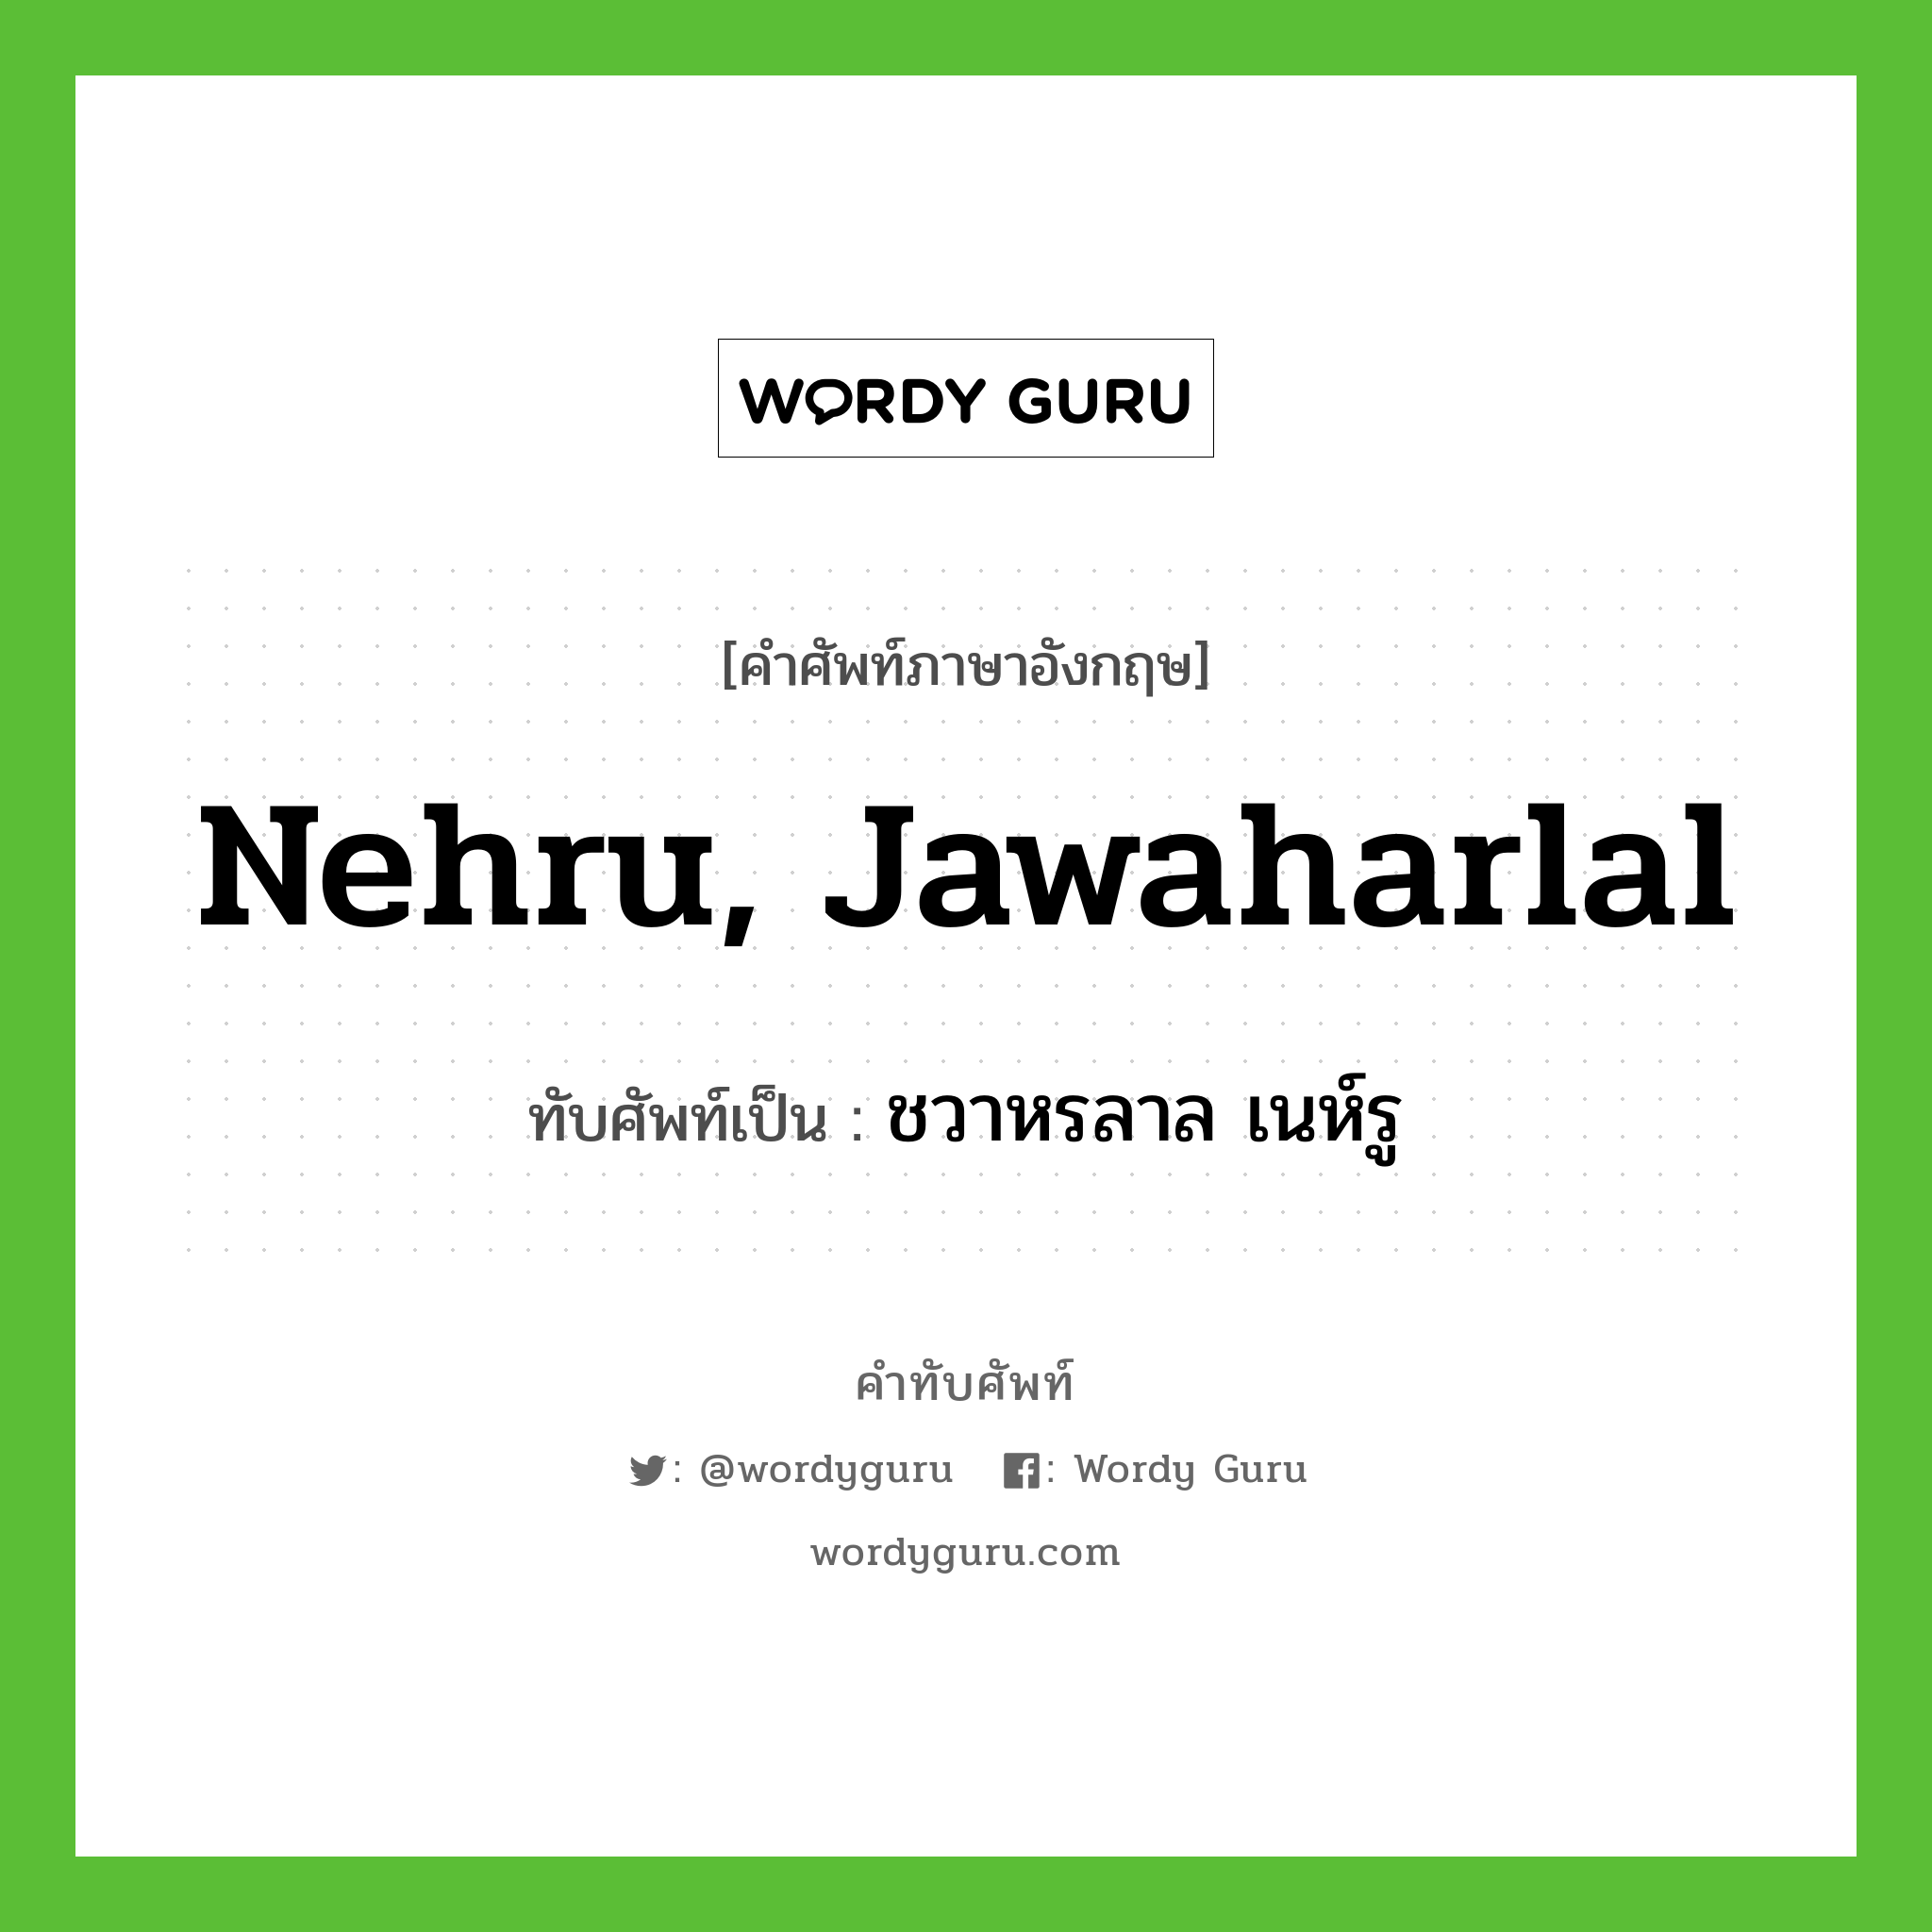 ชวาหรลาล เนห์รู เขียนอย่างไร?, คำศัพท์ภาษาอังกฤษ ชวาหรลาล เนห์รู ทับศัพท์เป็น Nehru, Jawaharlal